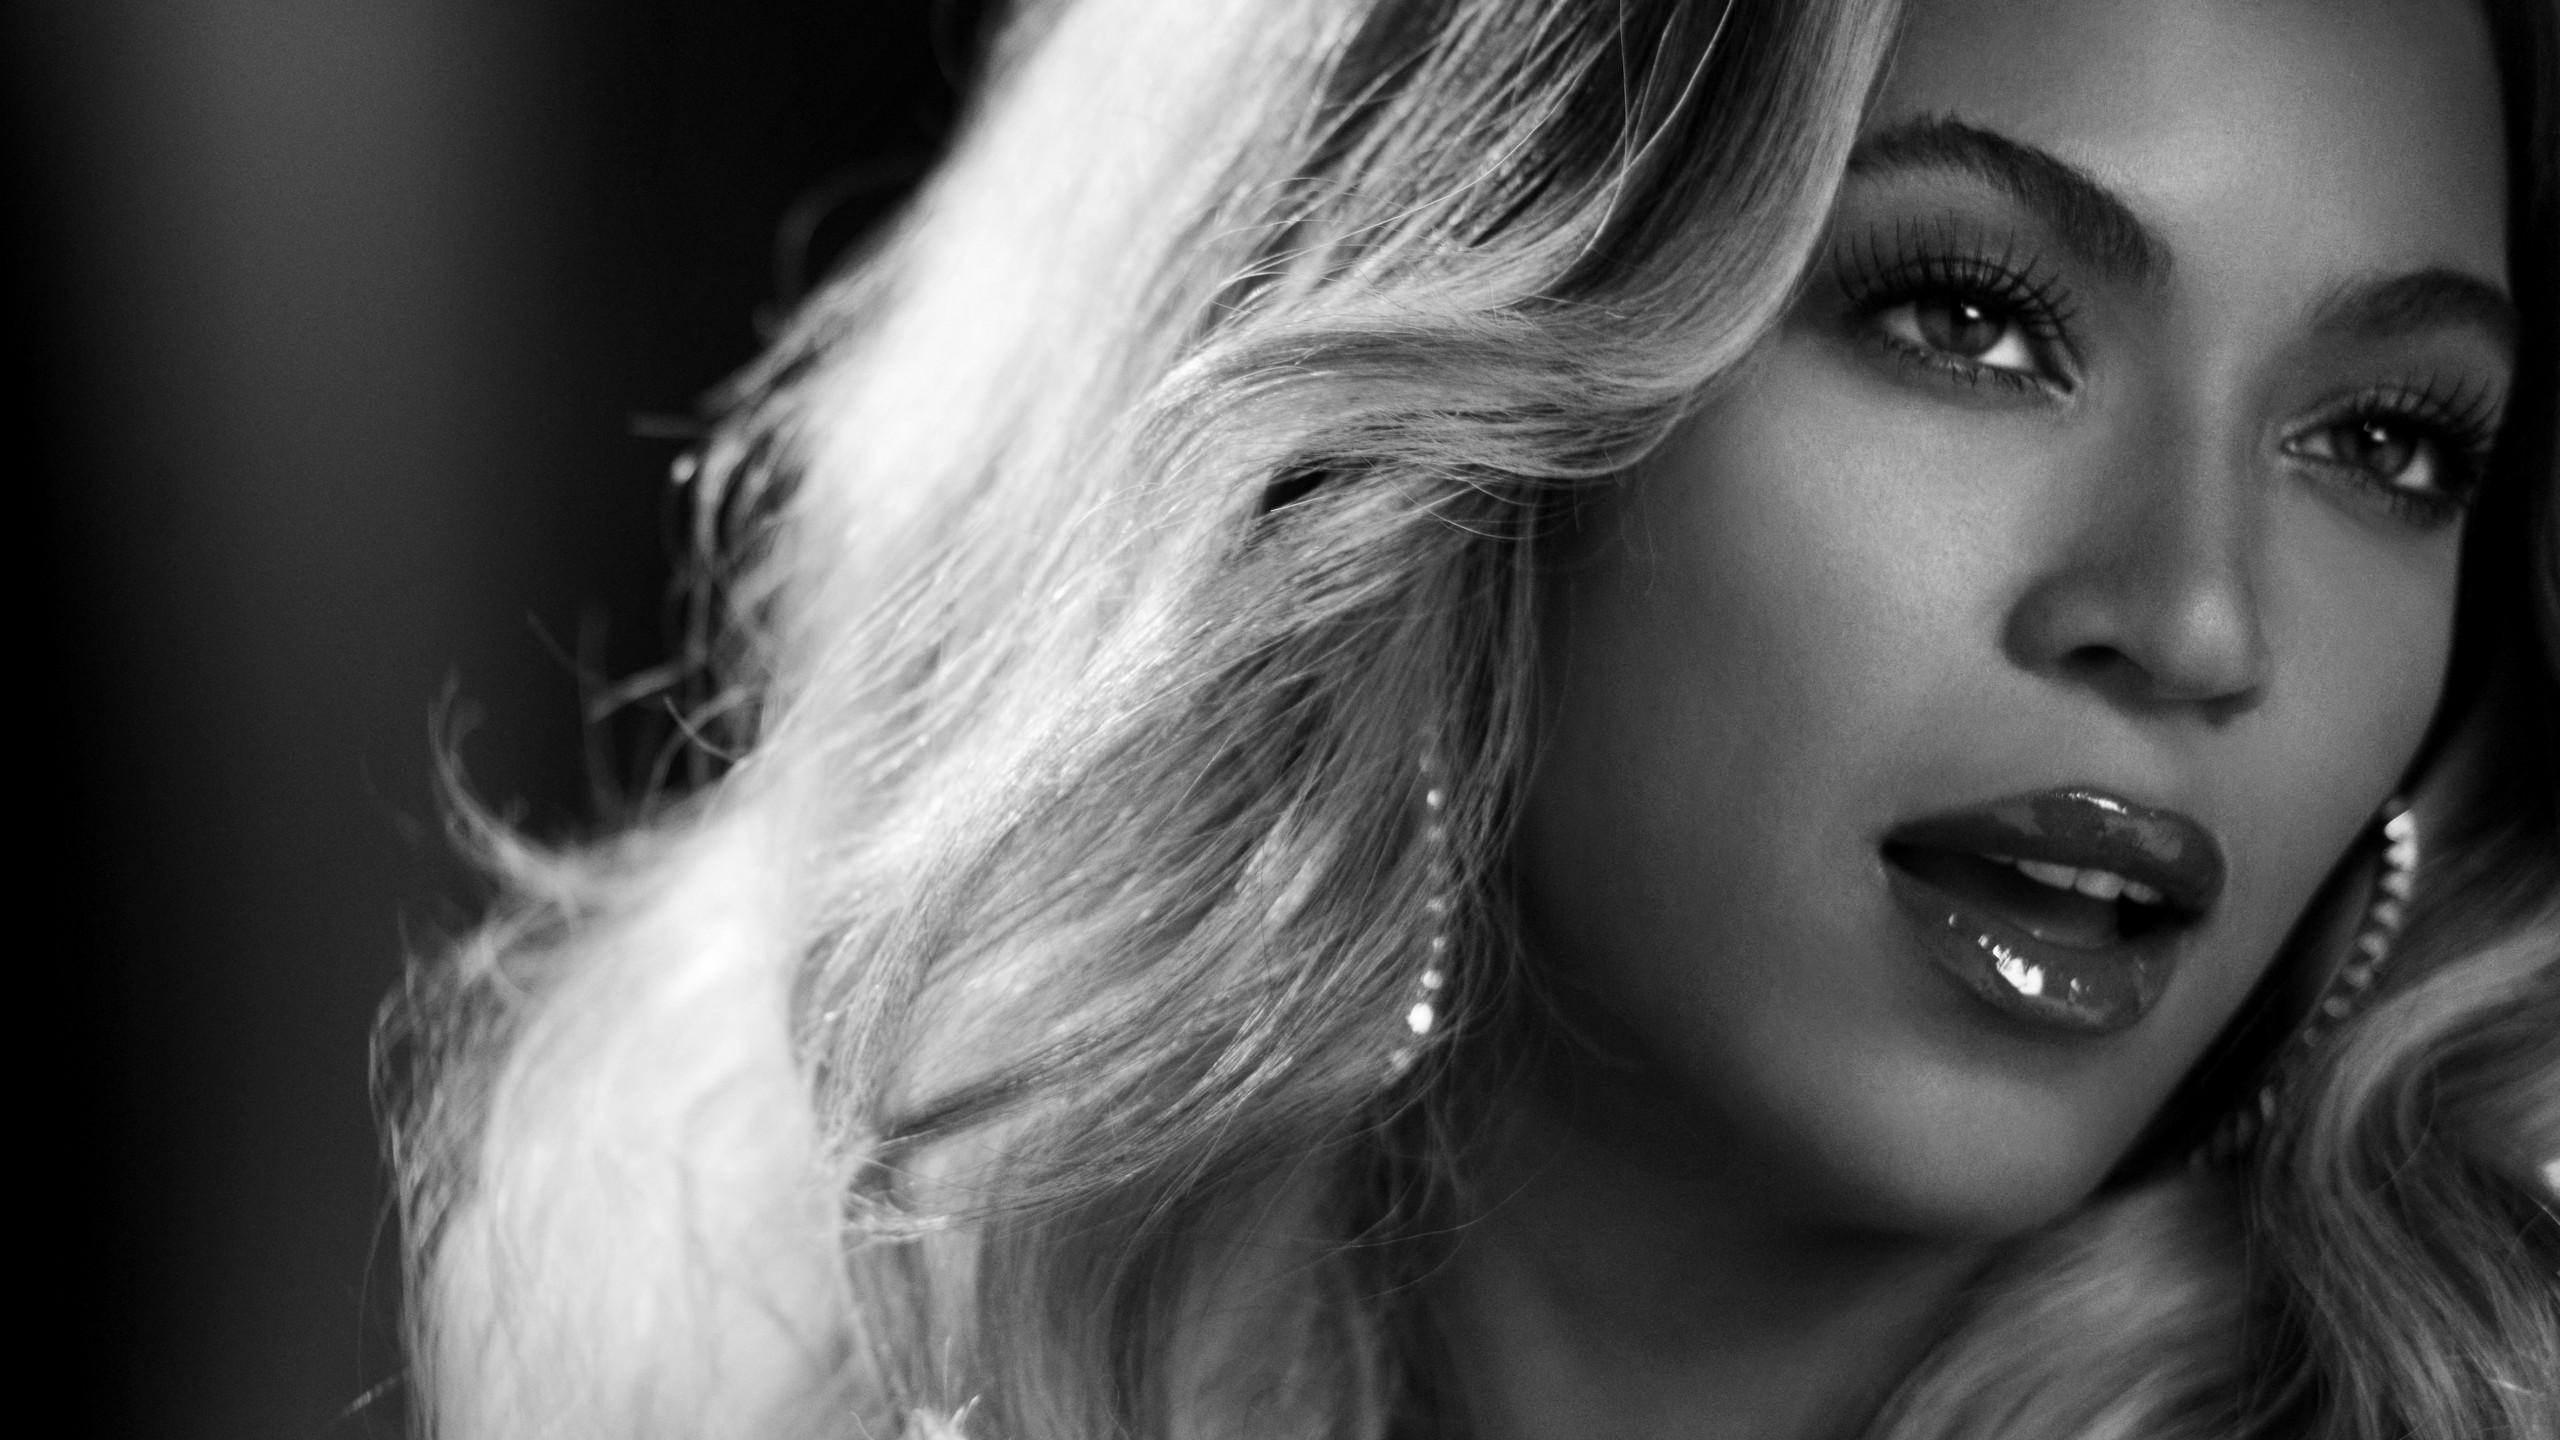 Beyonce in Black & White Wallpaper for Desktop 2560x1440